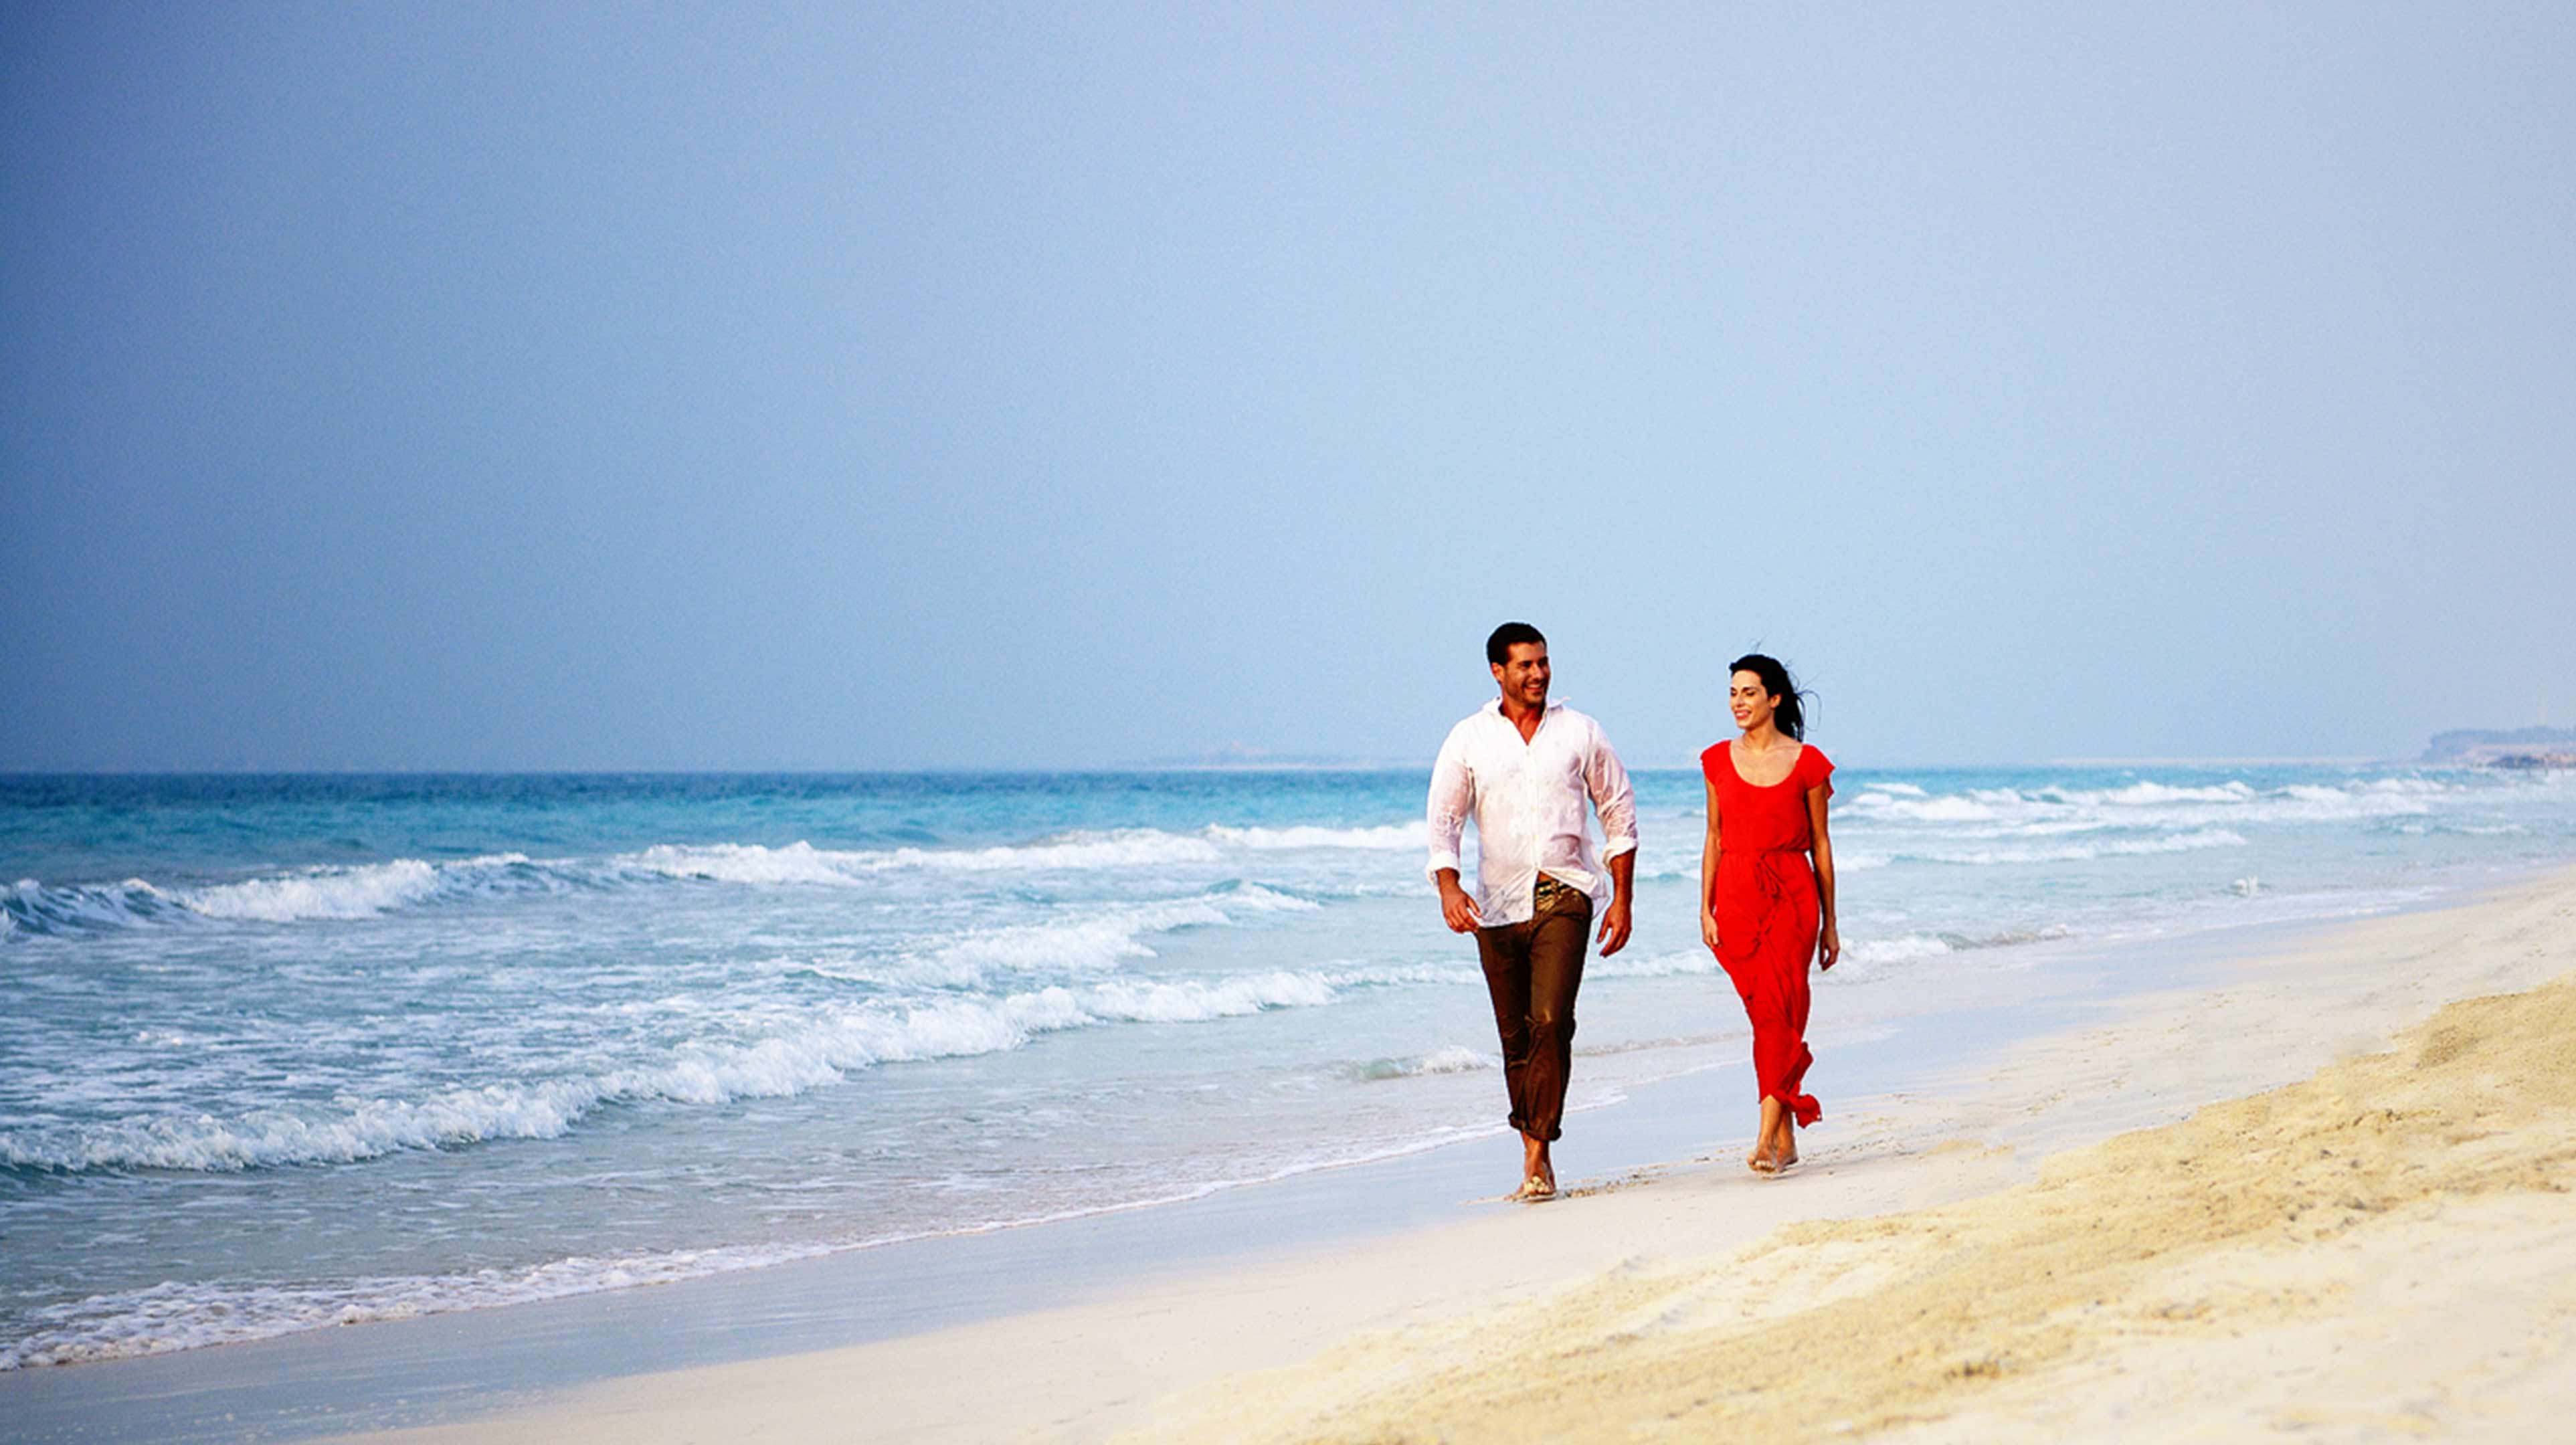 Una donna in un vestito rosso e un uomo passeggiano in spiaggia.